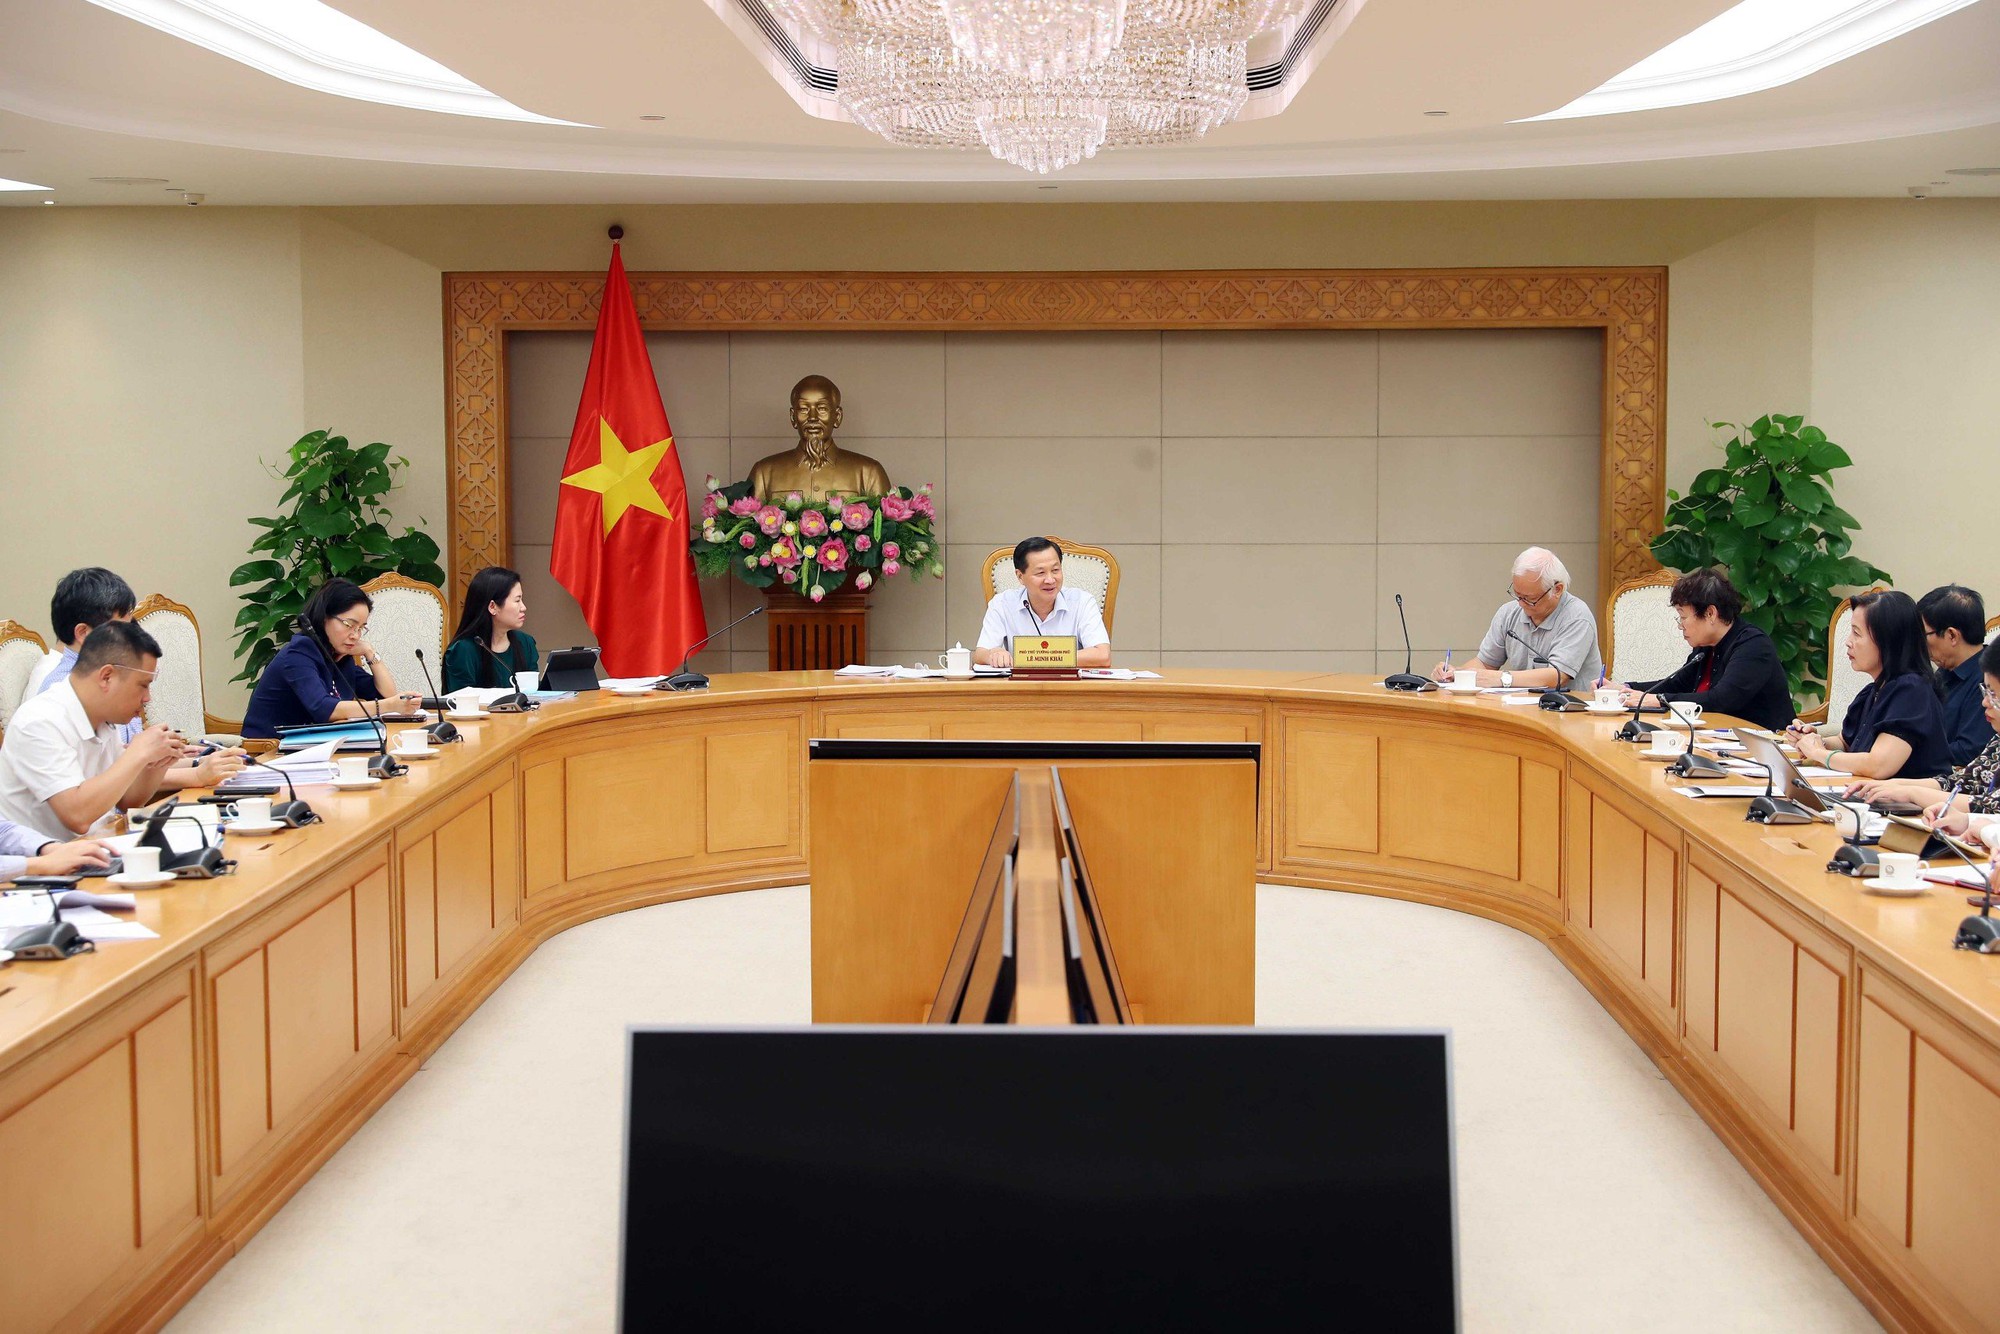 Phó Thủ tướng yêu cầu ứng kinh phí để chi trả tiền giải thưởng Hồ Chí Minh, giải thưởng Nhà nước - Ảnh 1.